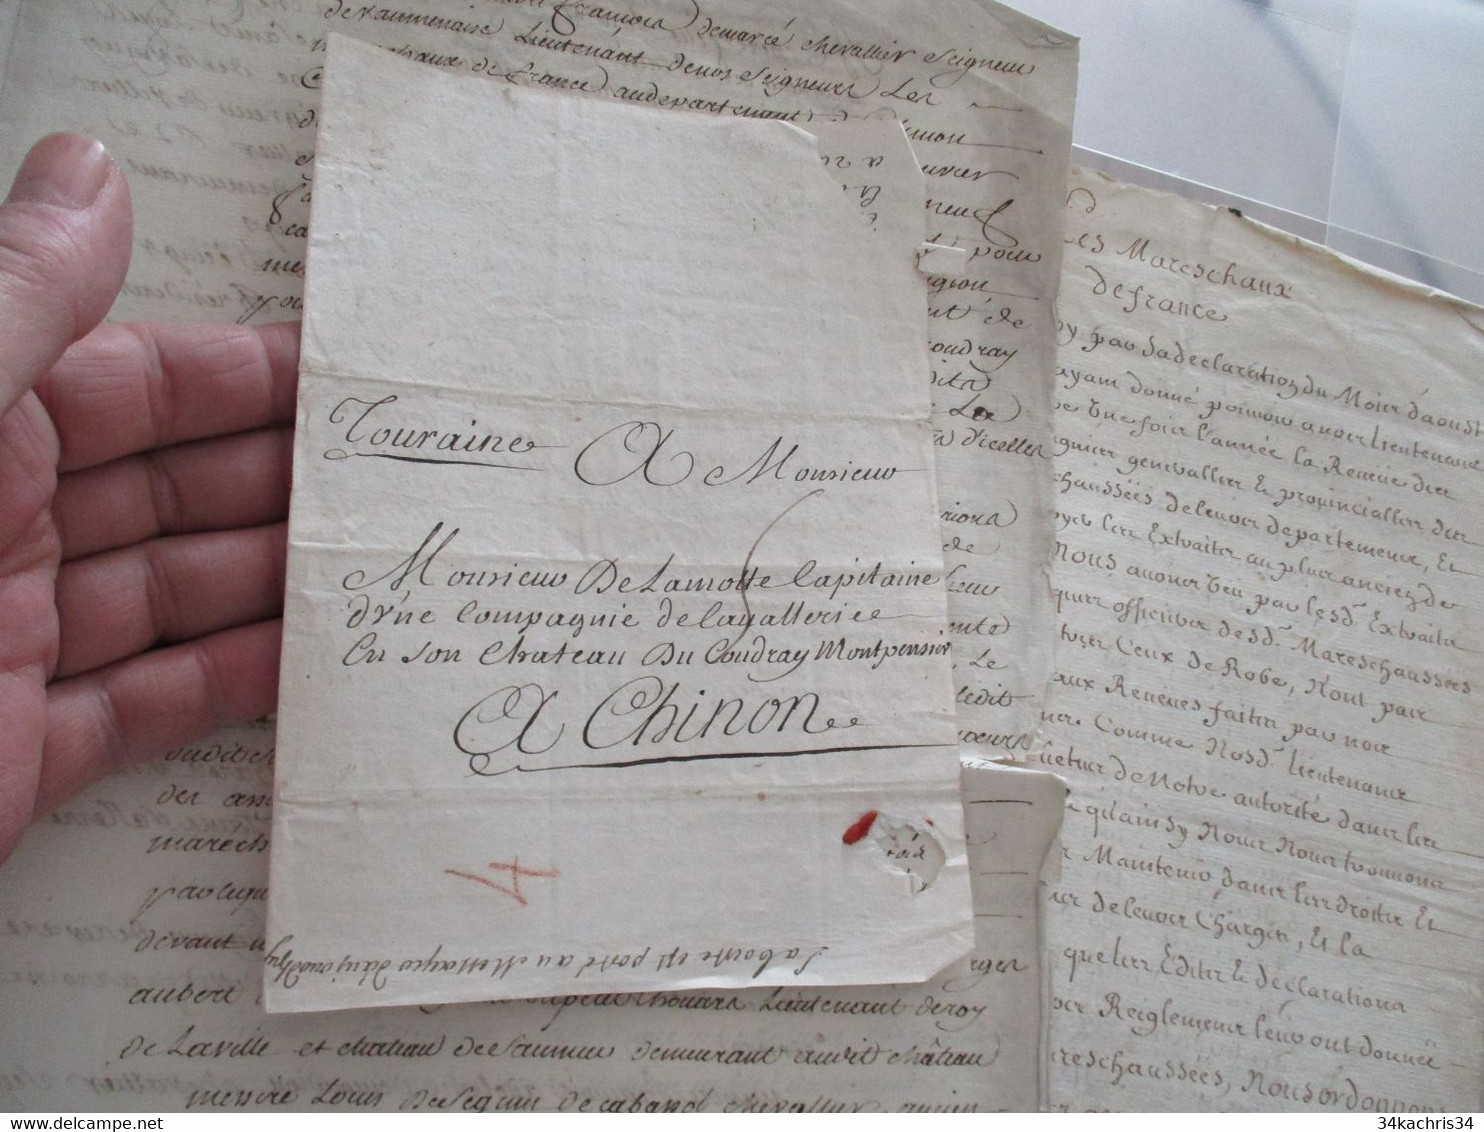 Archive Delamotte Barace sier de Coudray Montpensier 15 pièces dont règlements sceau correspondance signatures